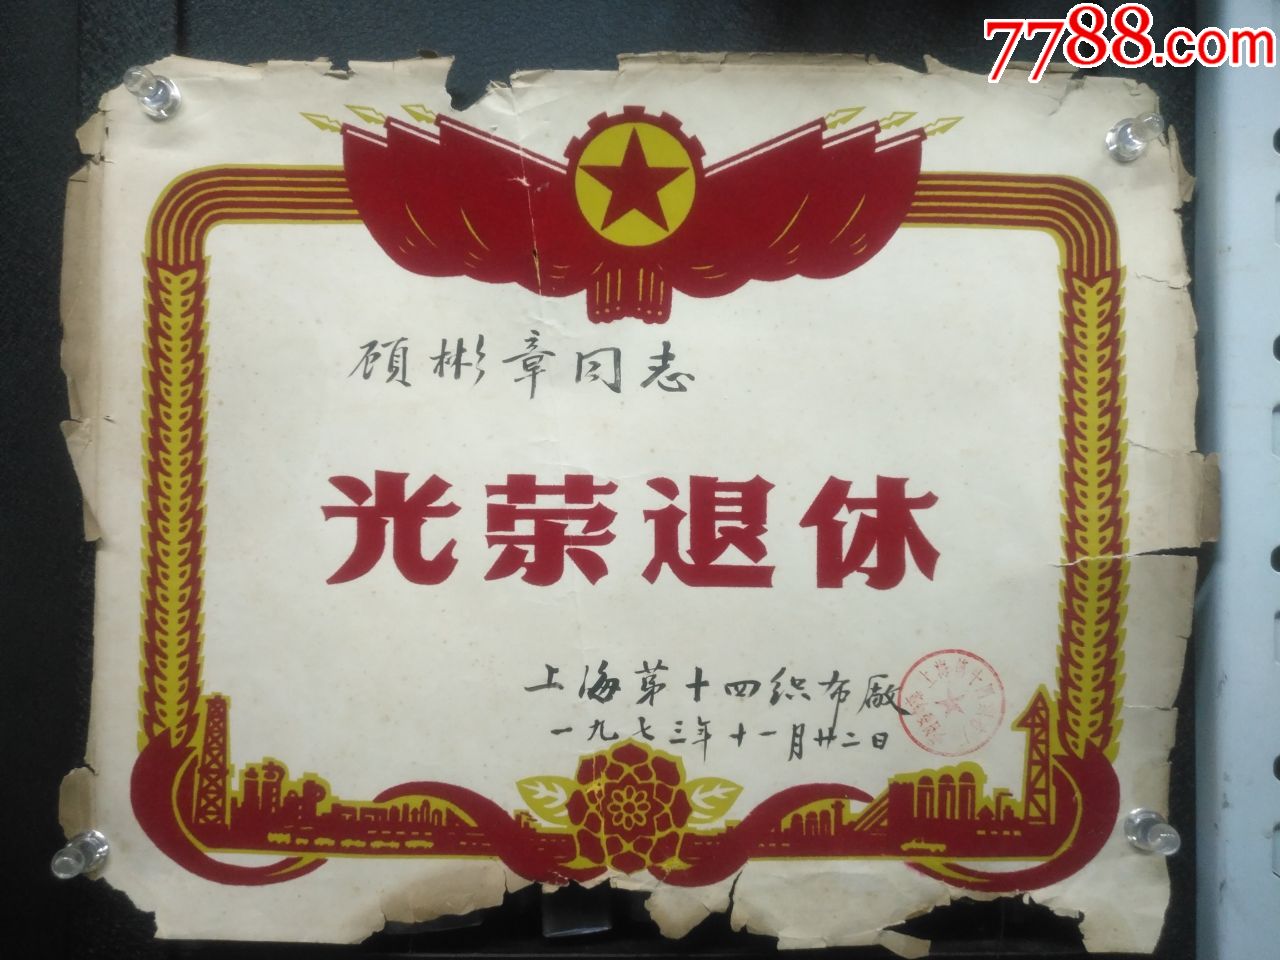 1973年上海十四织布厂光荣退休,植绒